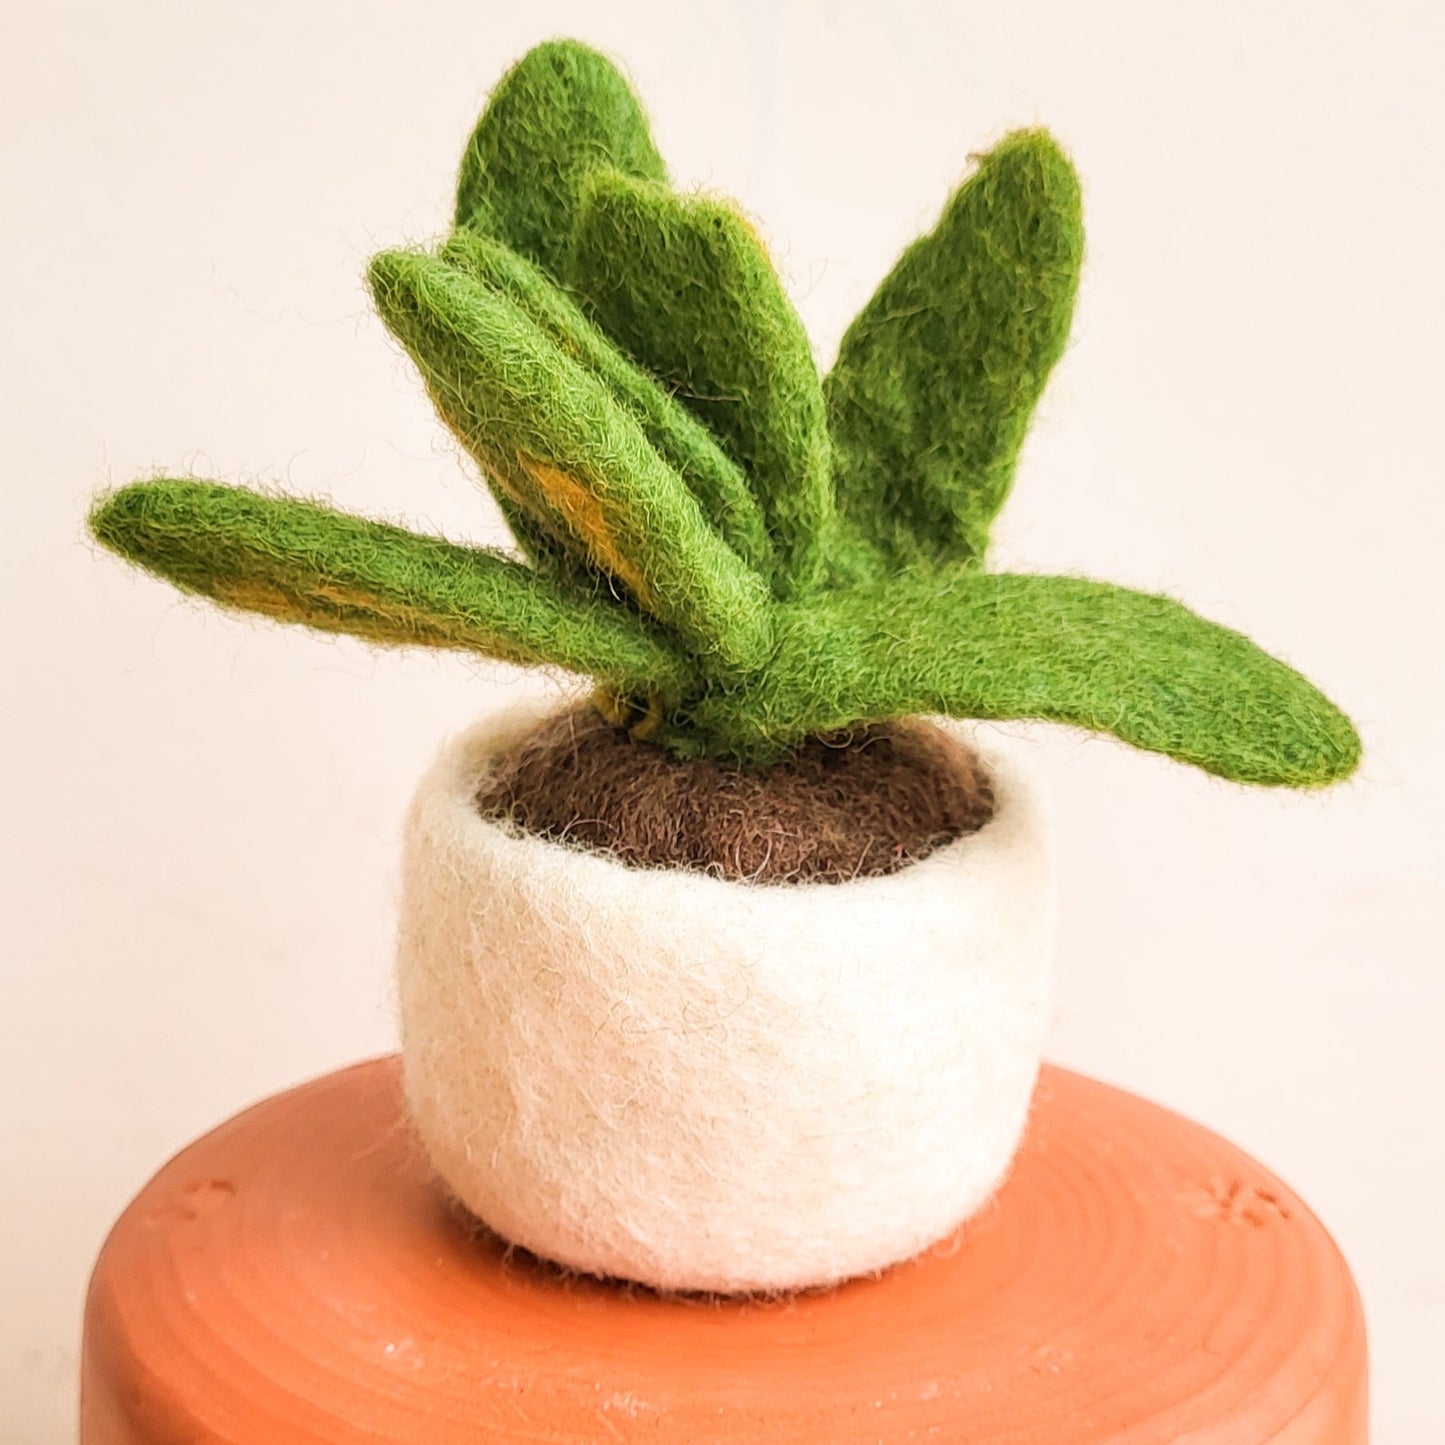 Felt So Good | Felt Miniature Plant Decoration